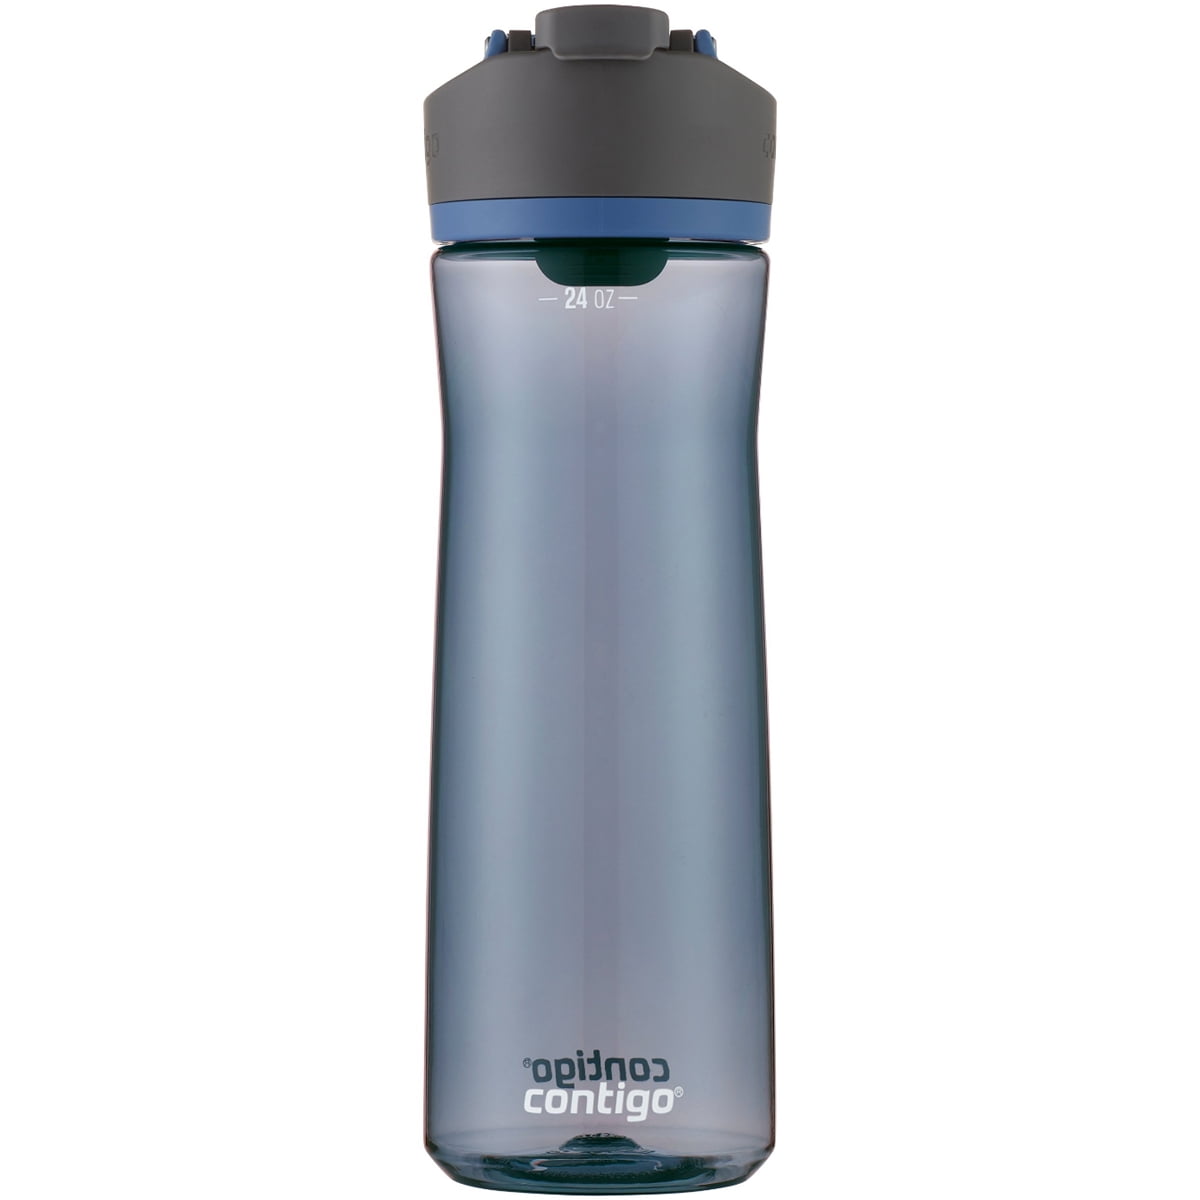 Contigo Cortland AUTOSEAL® Water Bottle 